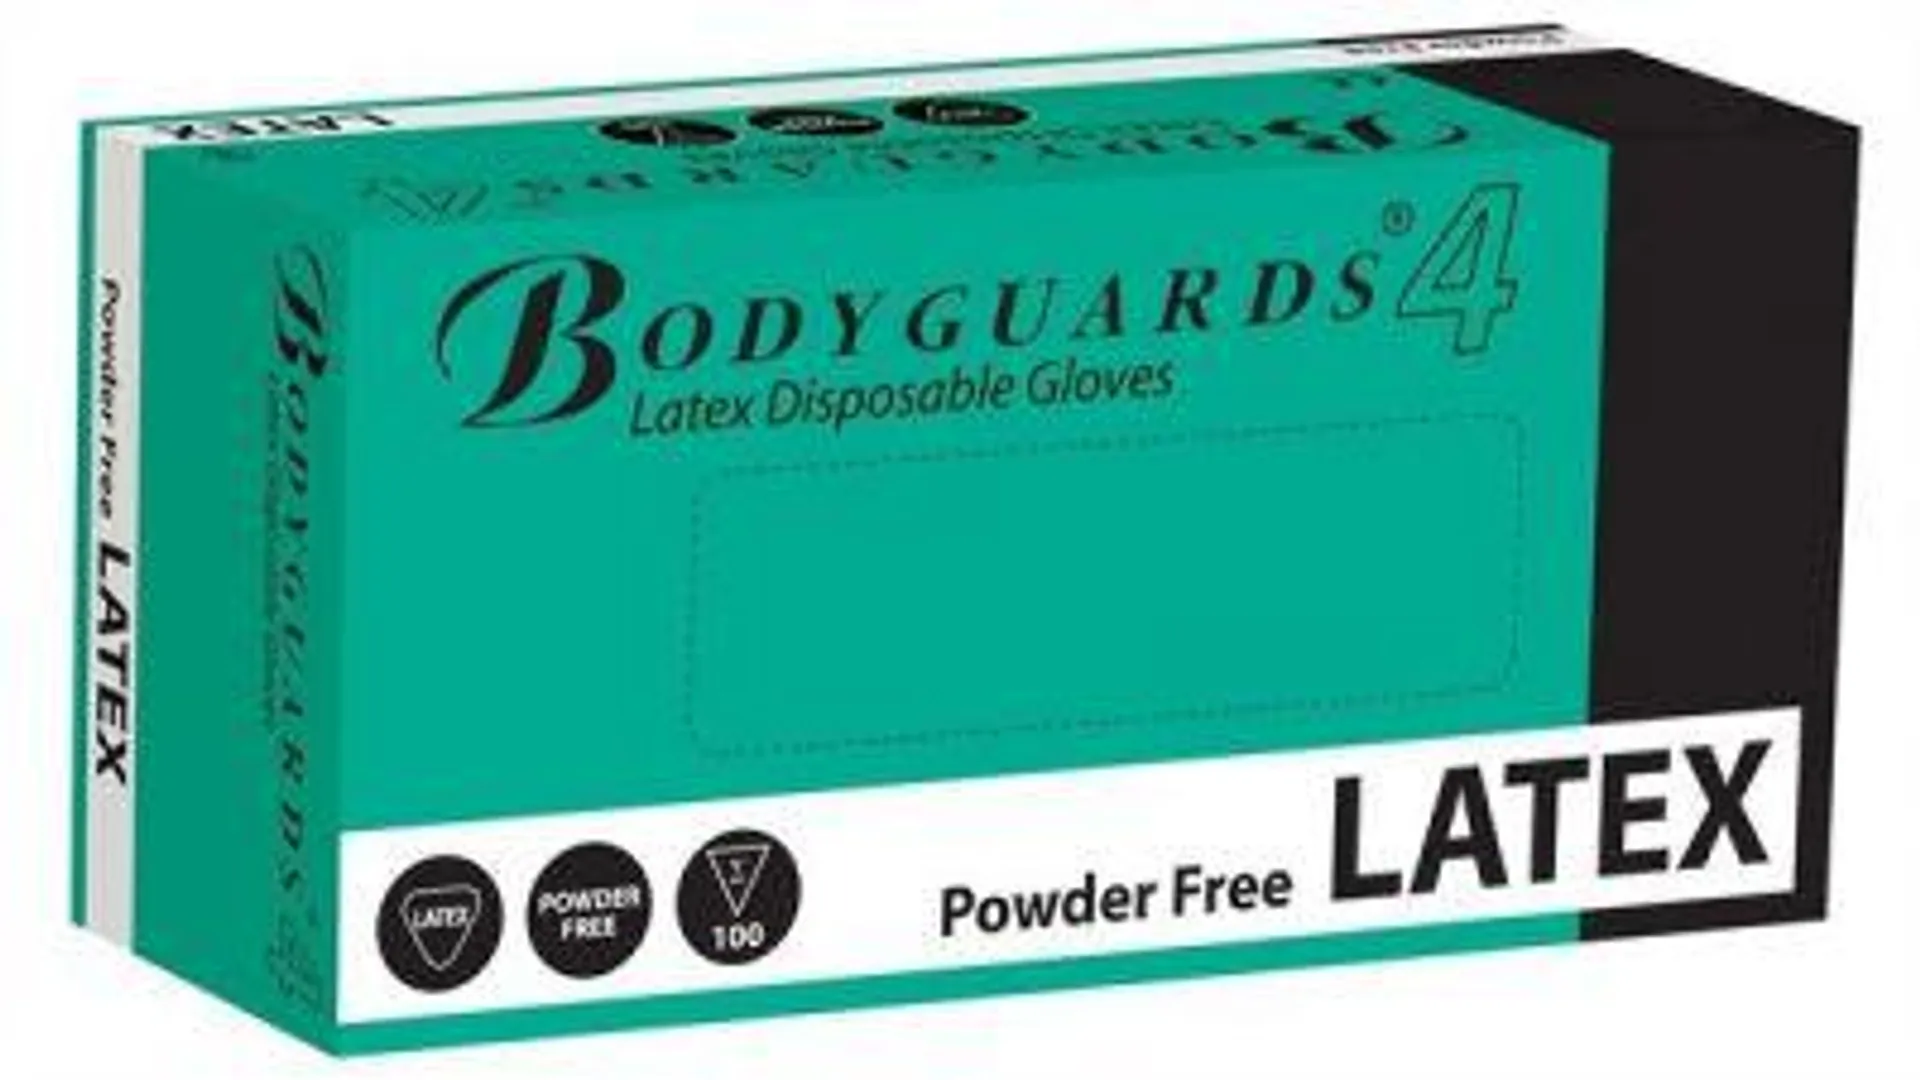 saville latex powder free gloves large - x 100